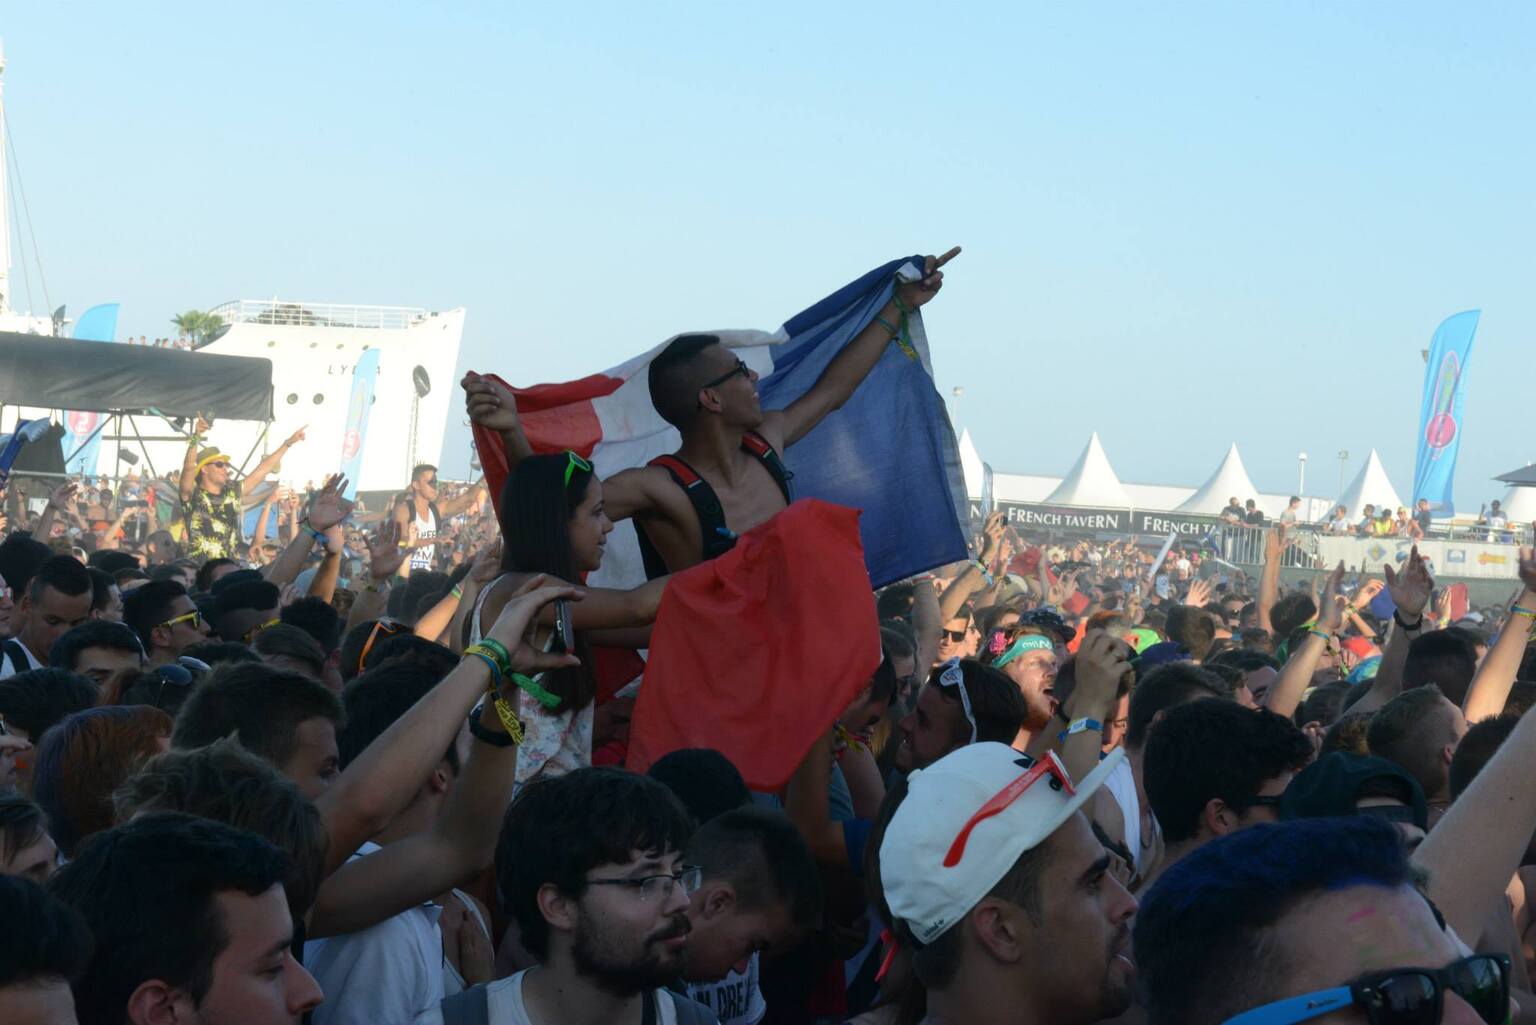 Événement Electrobeach Music Festival 2015 au Port-Barcarès en partenariat avec Trance In France, avec la participation d’Armin van Buuren parmi les artistes invités.